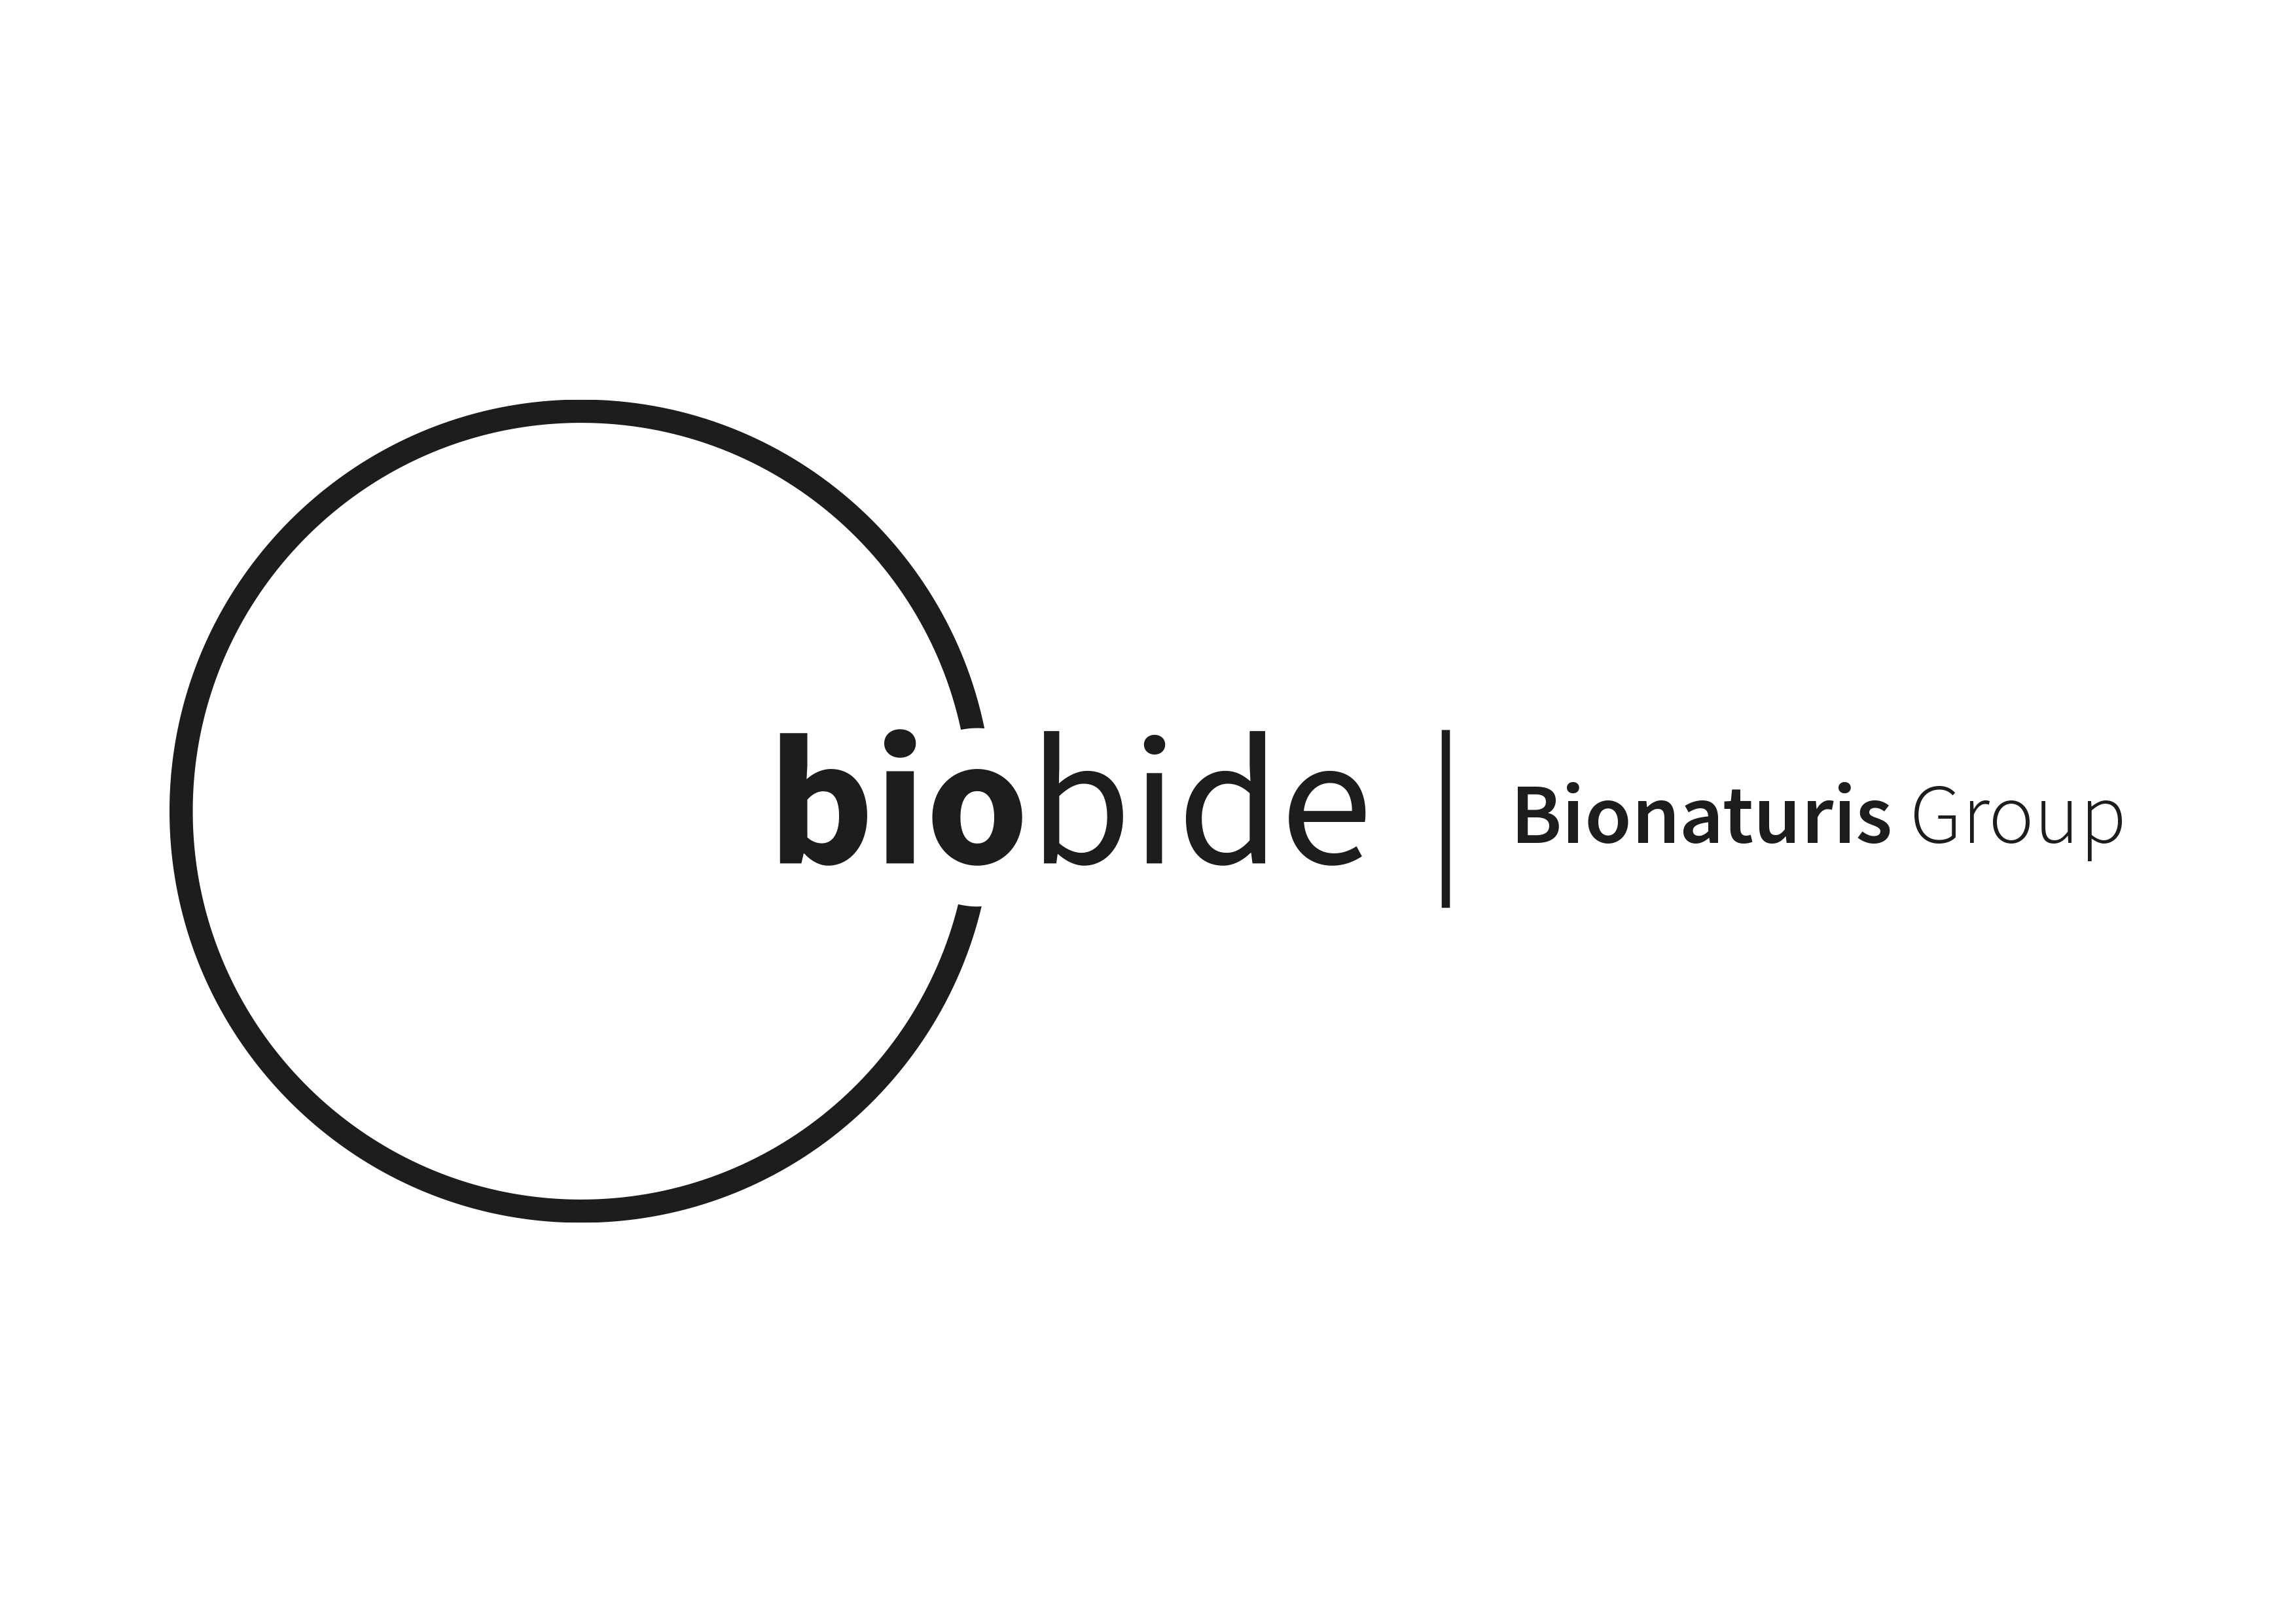 bbd biophenix_biobide.jpg